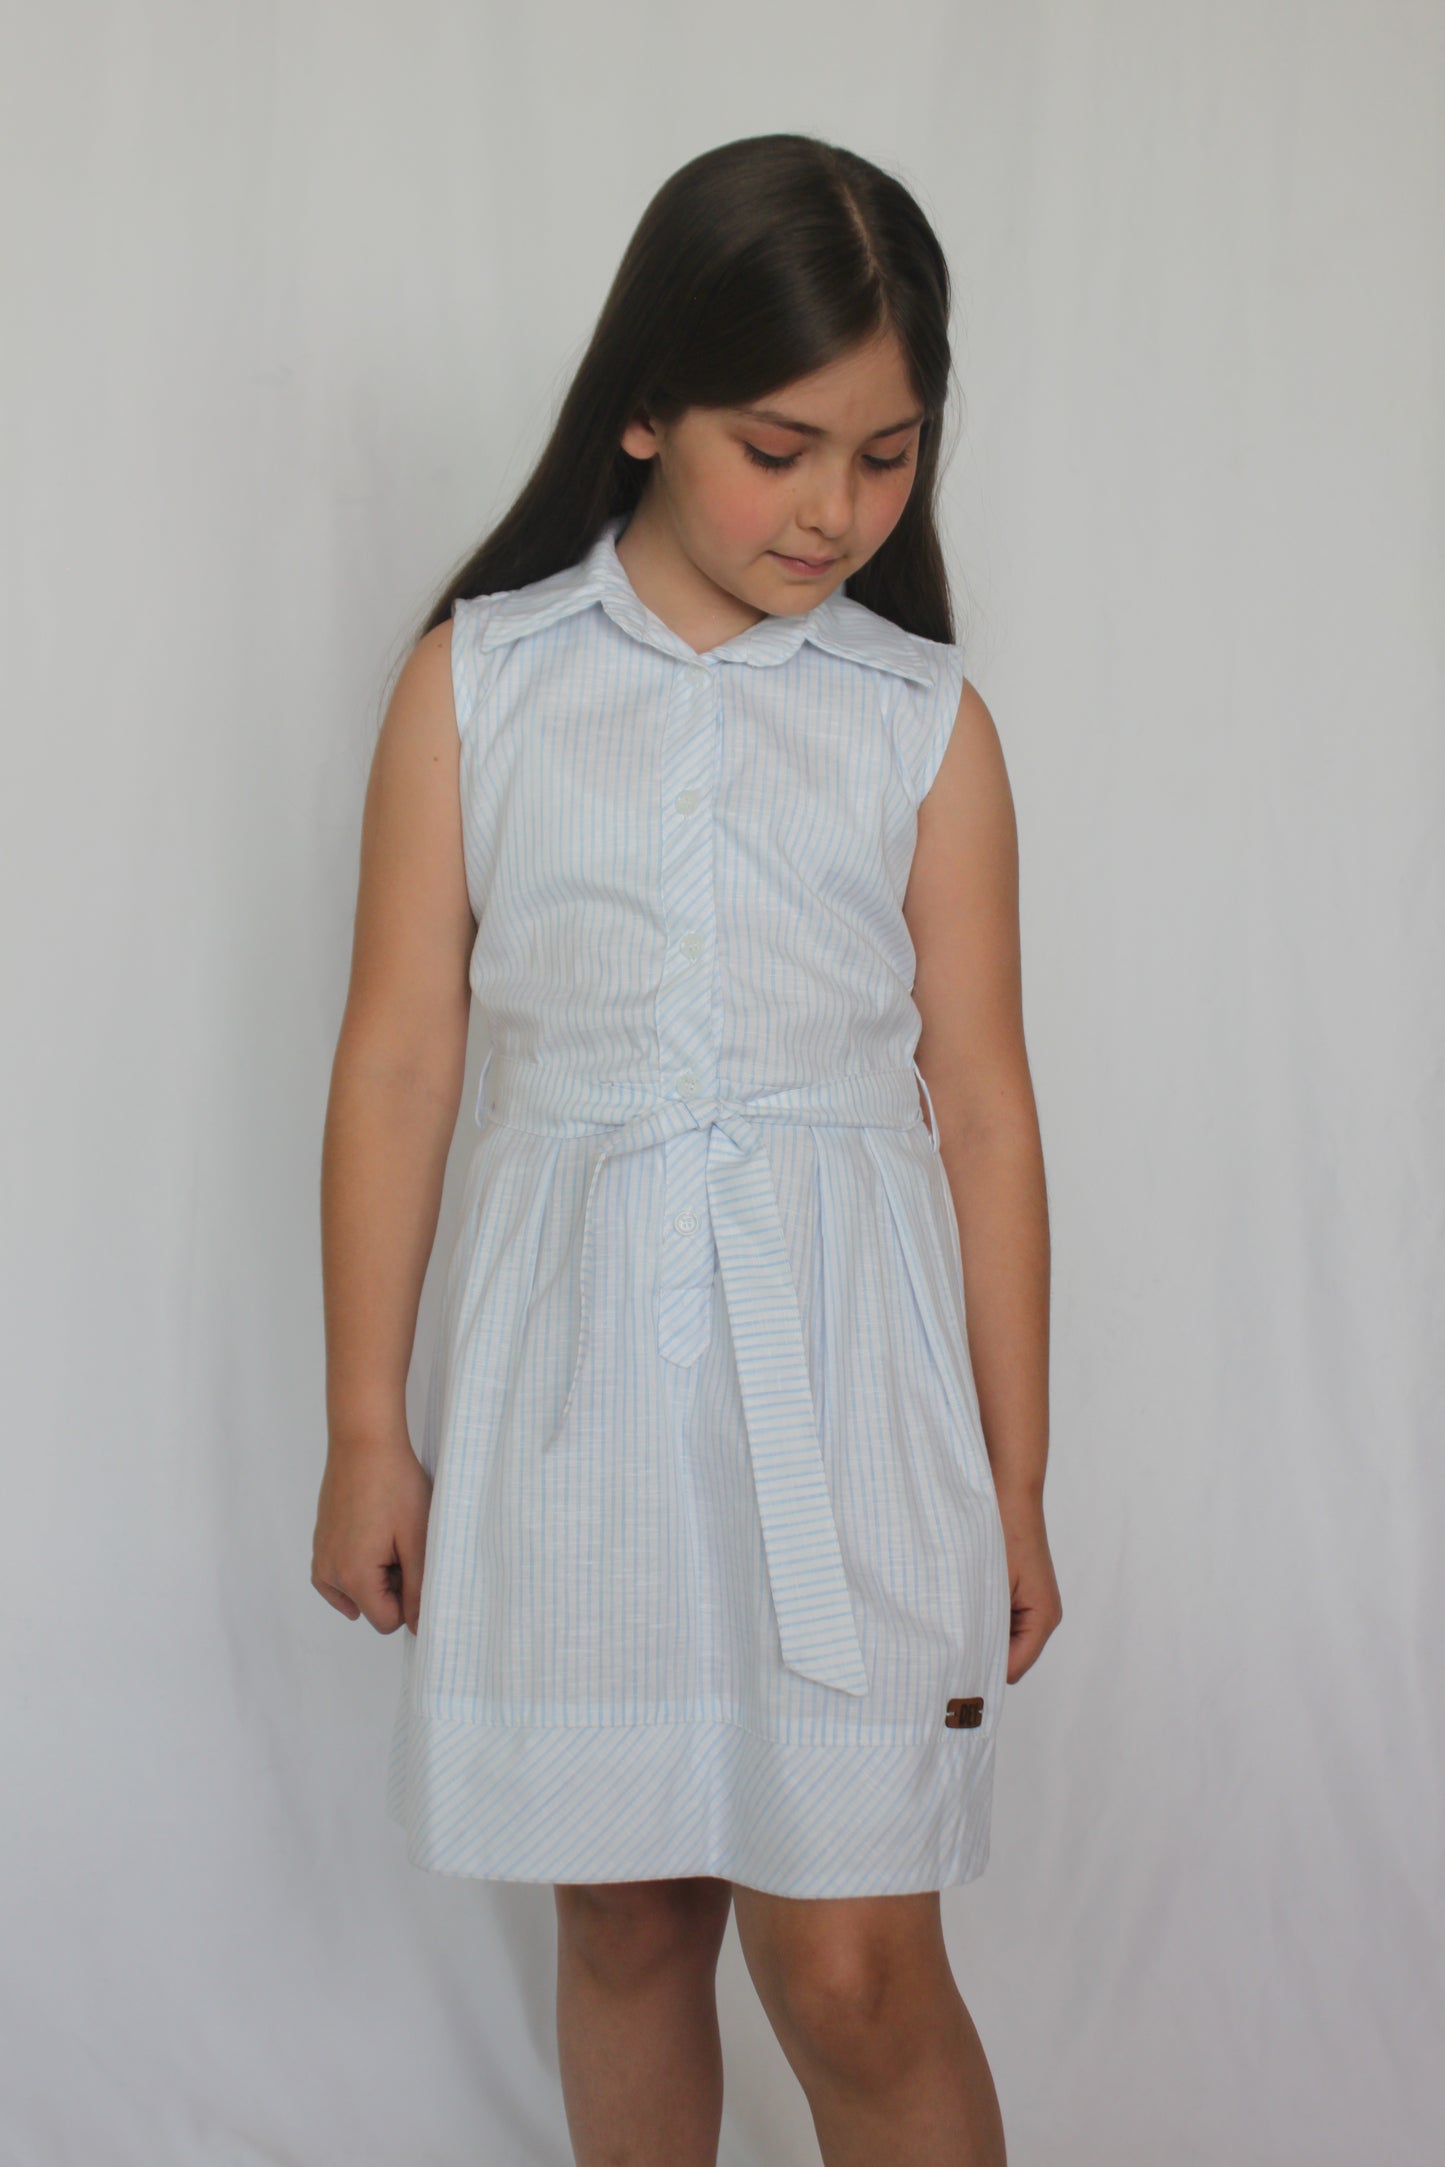 Vestido a la cintura con rayas, en azul y blanco para niñas.